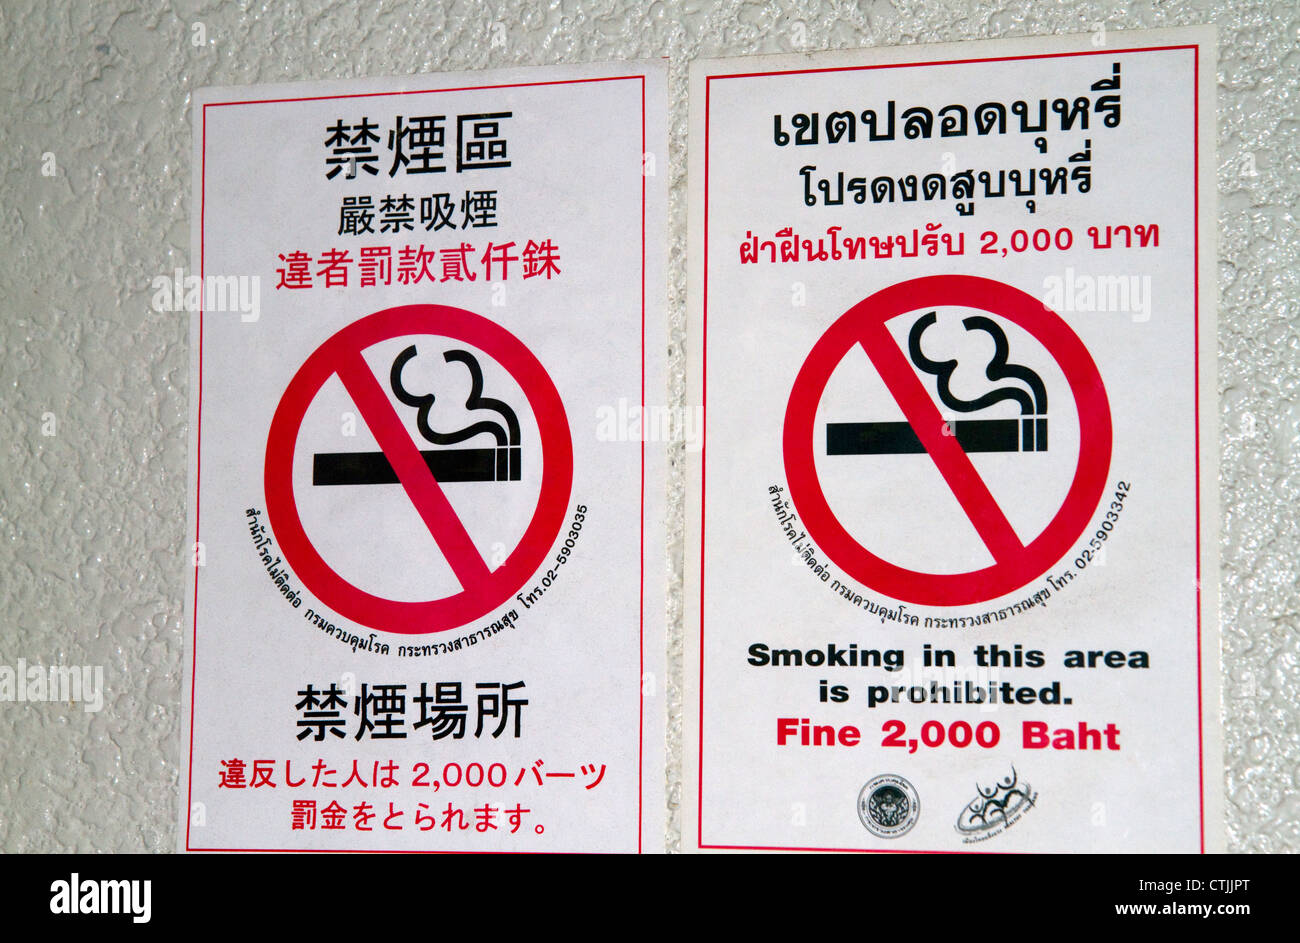 No smoking sign at The Grand Palace in Bangkok, Thailand. Stock Photo